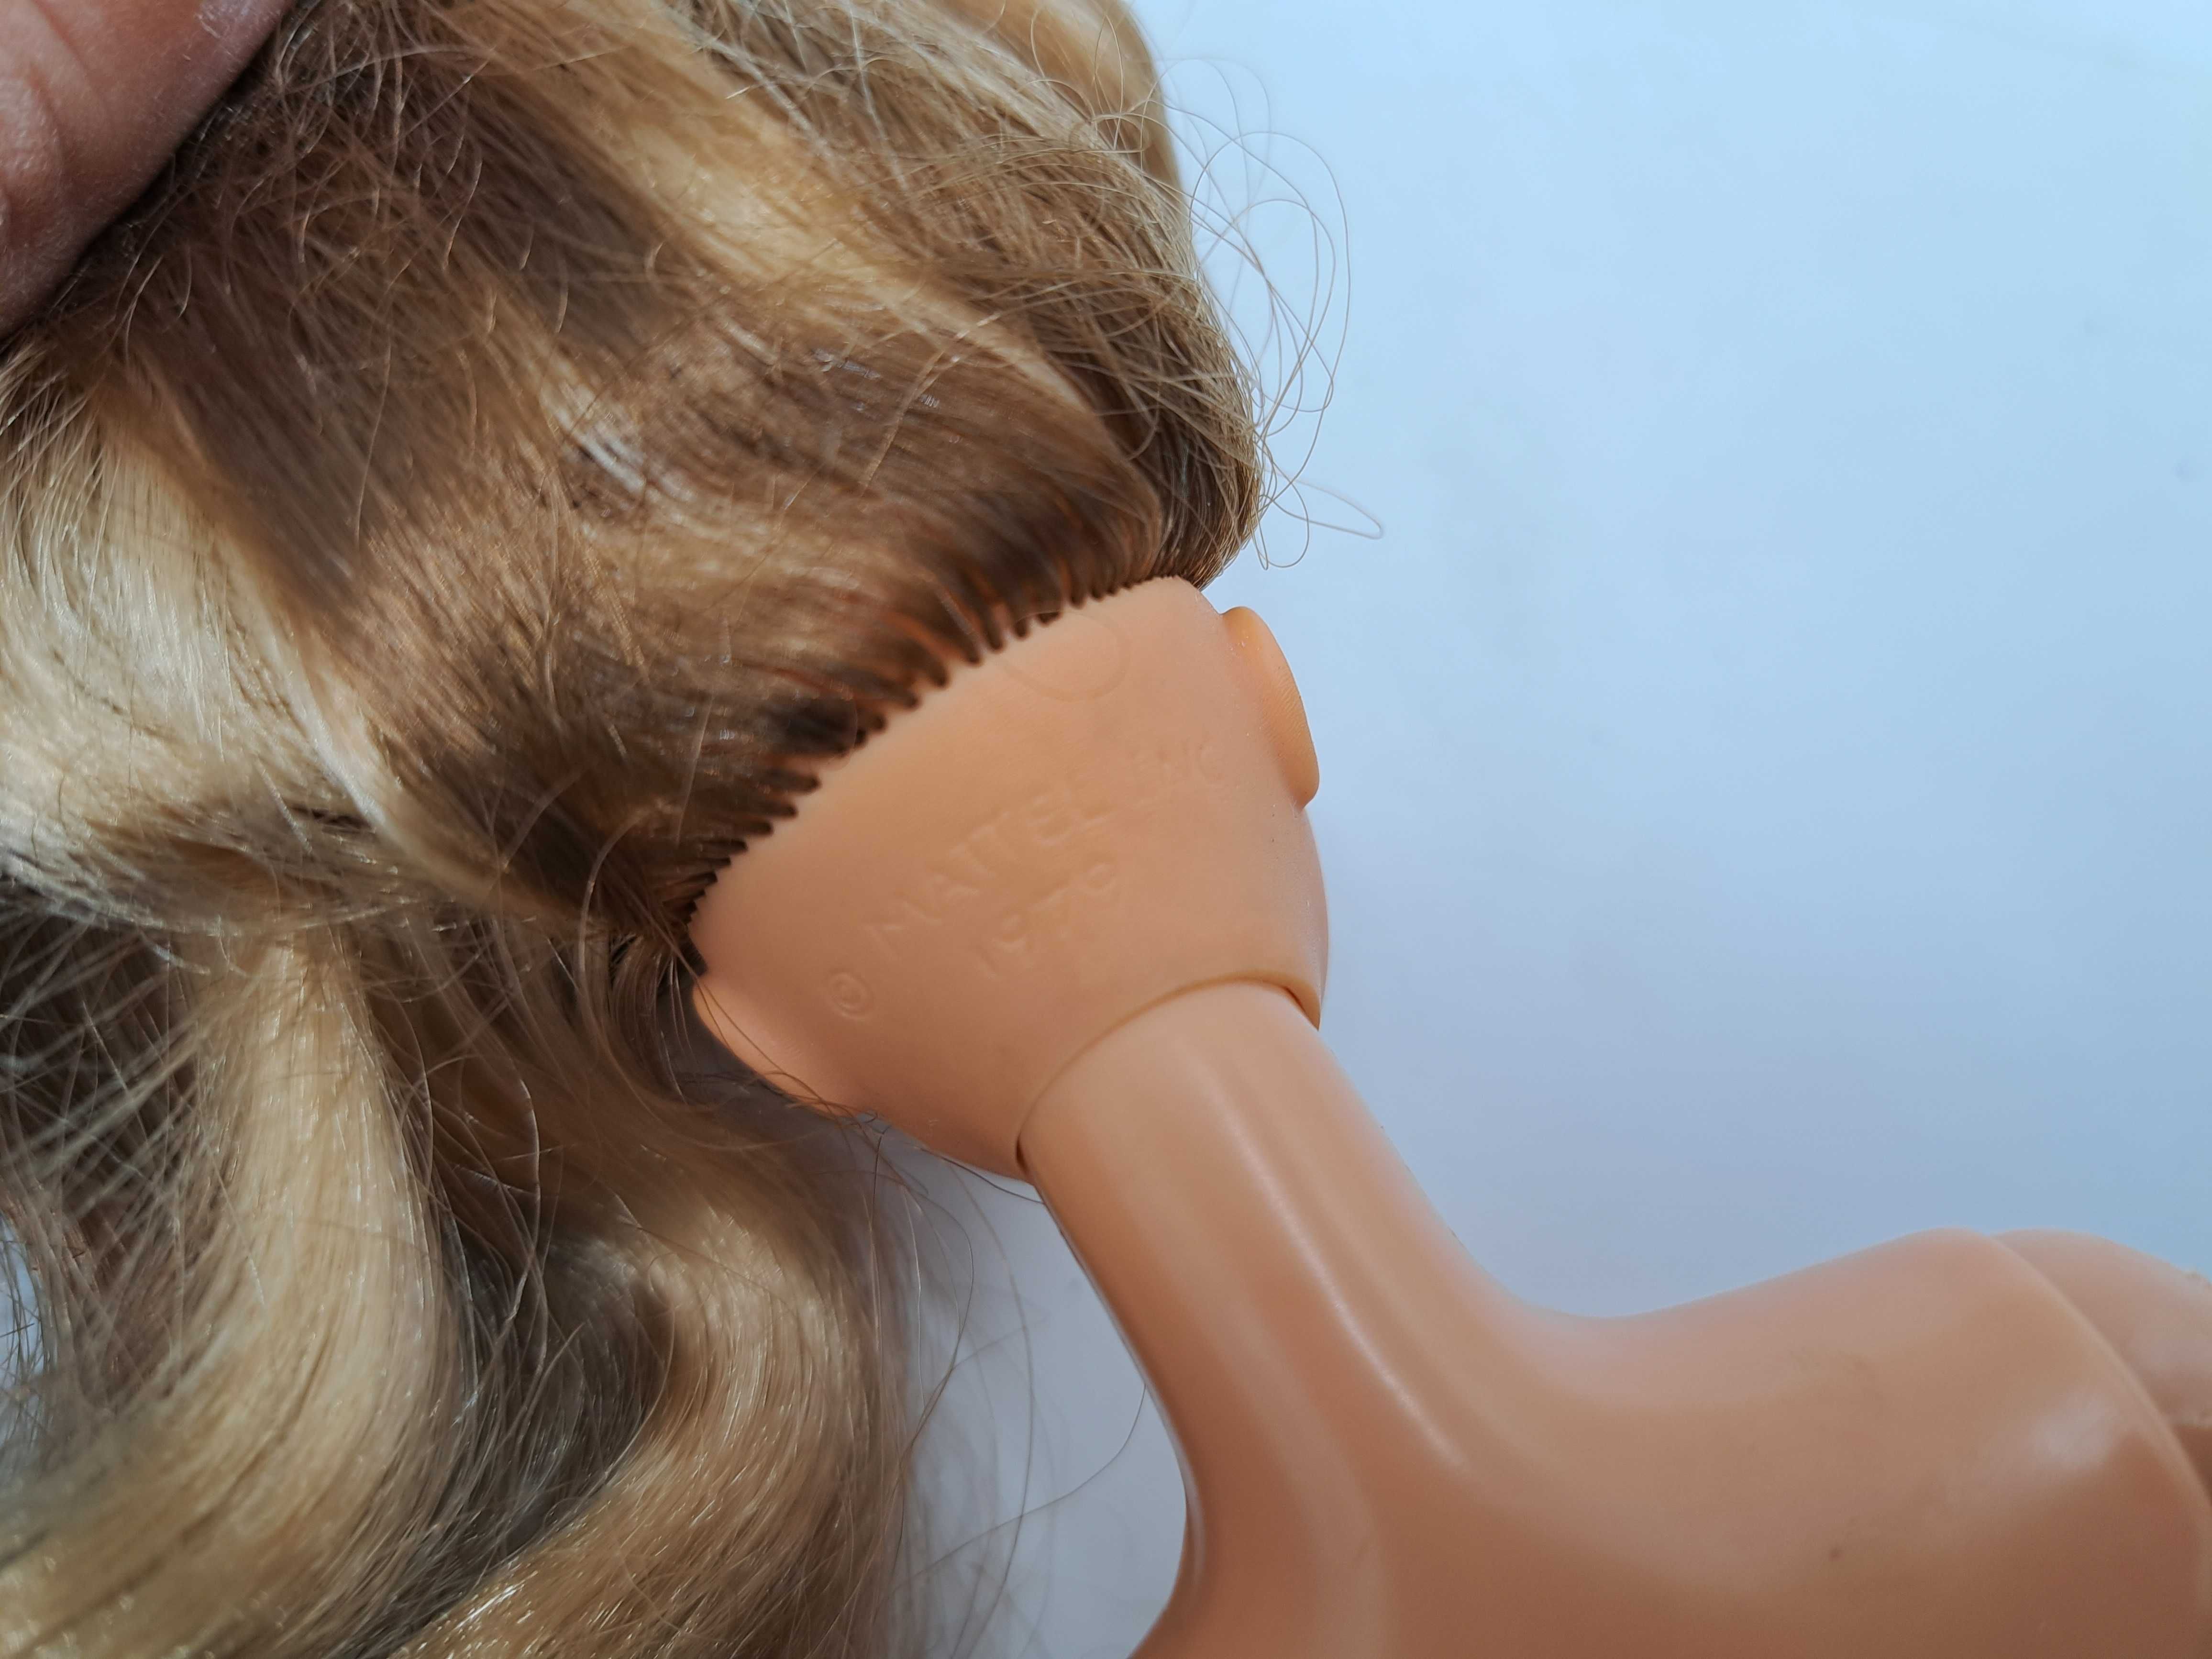 Lalka Barbie Mattel dwukolorowe brązowe i blond długie włosy, vintage